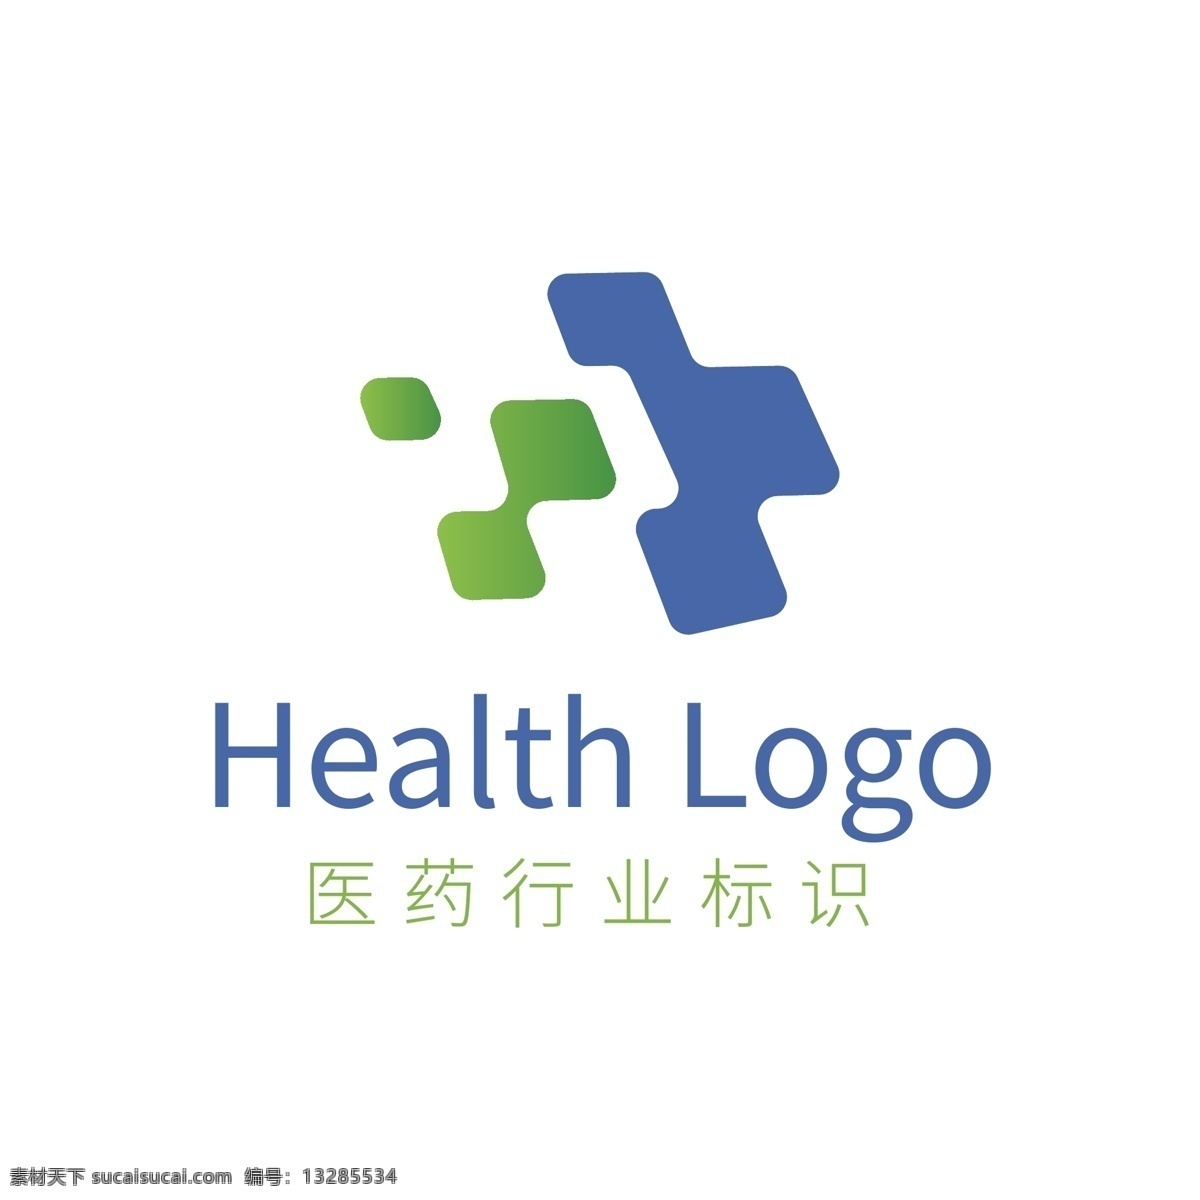 蓝绿色 十字 医药卫生 健康 行业 logo 模板 蓝色 绿色 医药 卫生